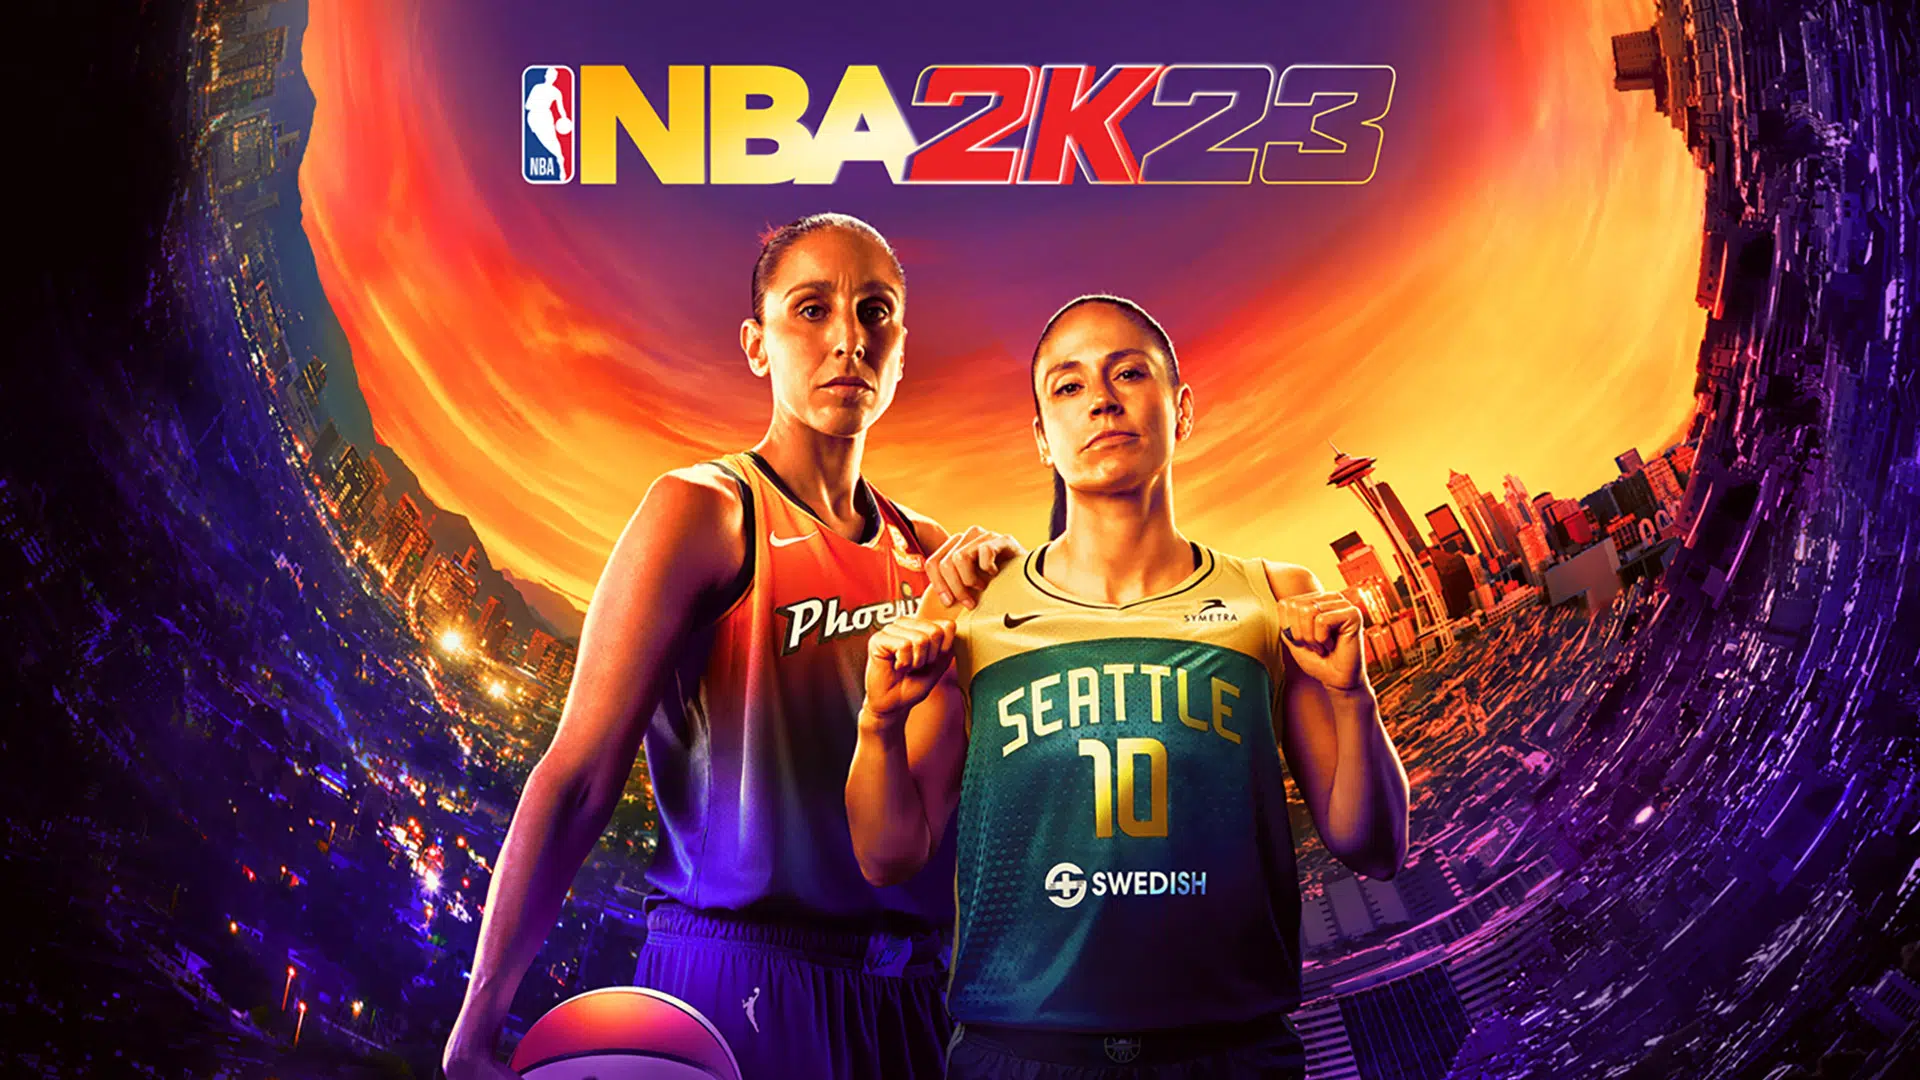 NBA 2K23 WNBA Edition Sue Bird Diana Taurasi